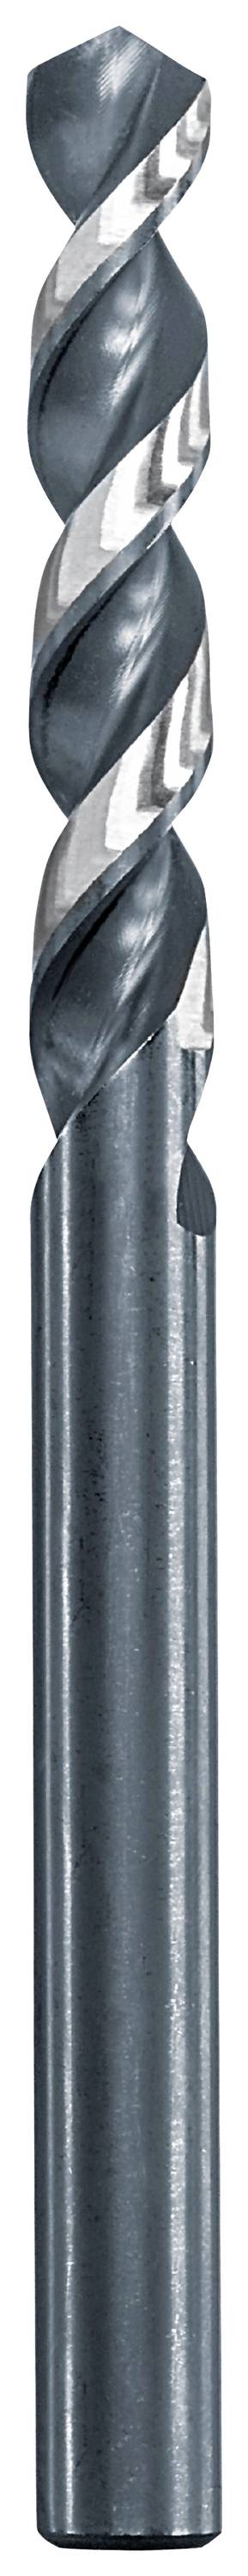 KWB 258615 Metall-Spiralbohrer 1.5 mm Gesamtlänge 40 mm 1 St.